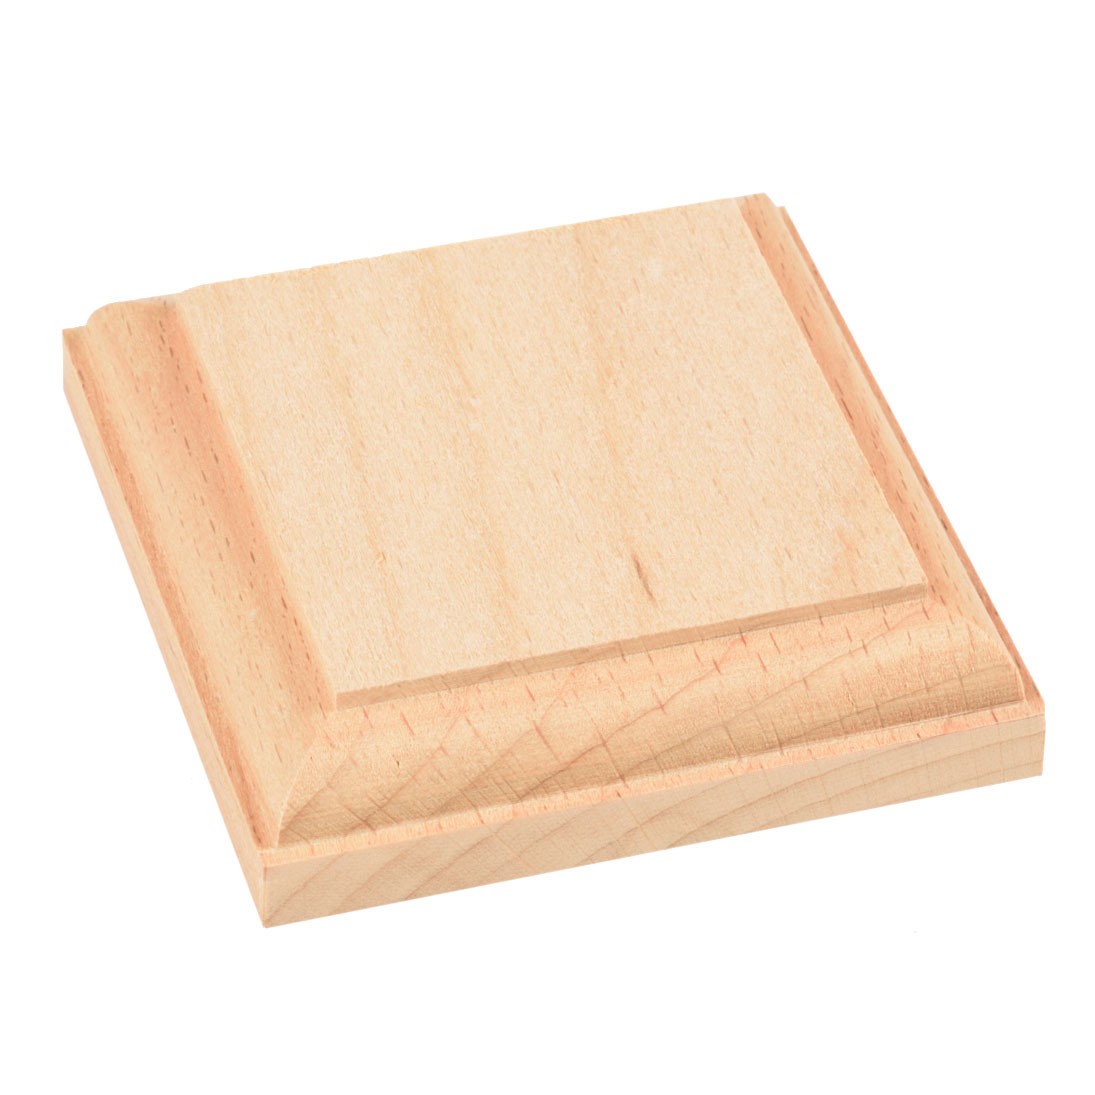 Amati Model - Basi legno quadre mm.80x80 - Basamenti legno pregiato